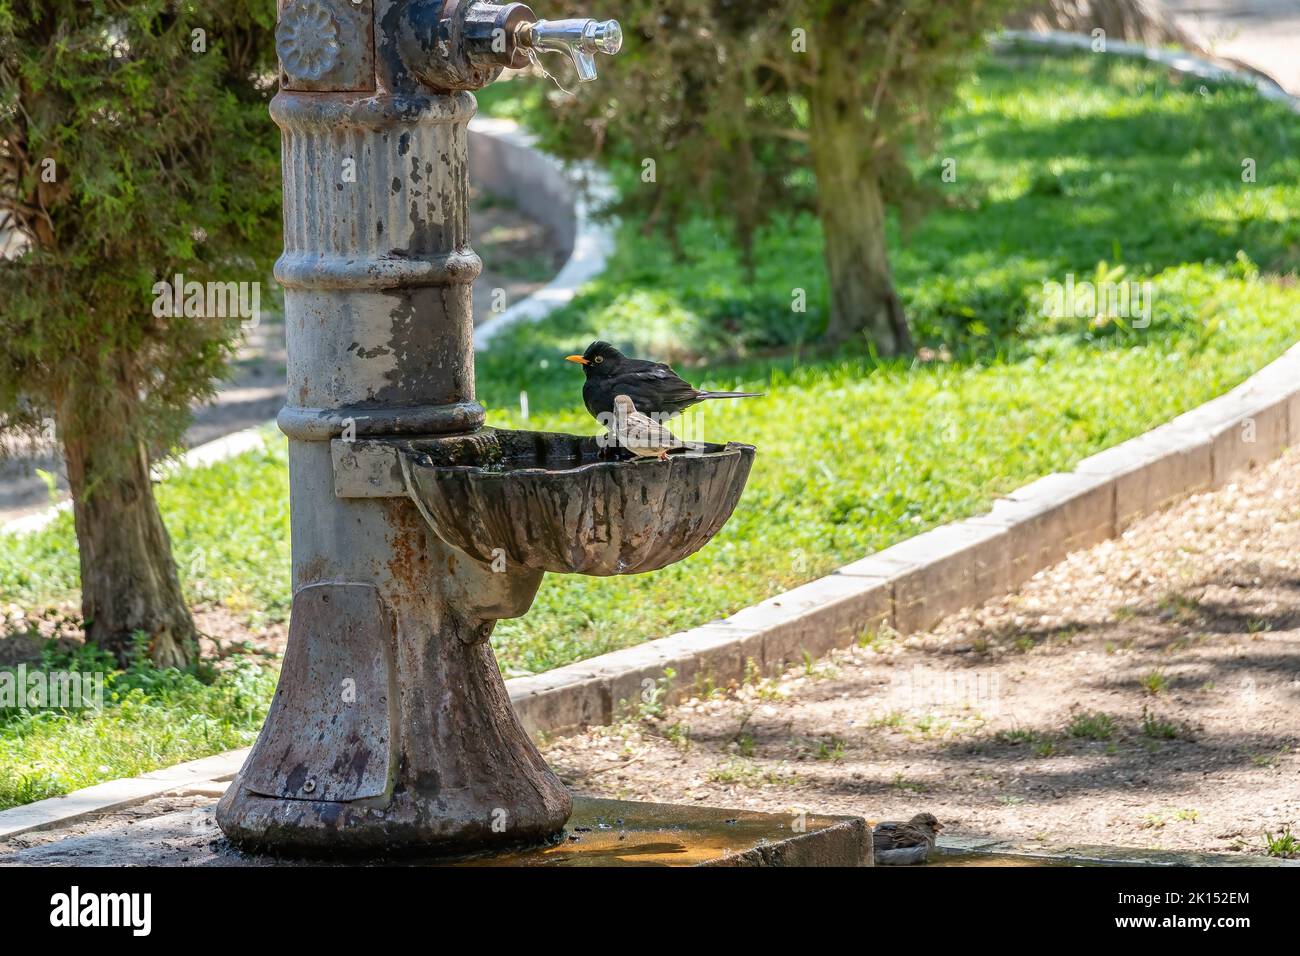 Männliche Amsel (Turdus merula), die in einem öffentlichen Brunnen baden und trinken Stockfoto